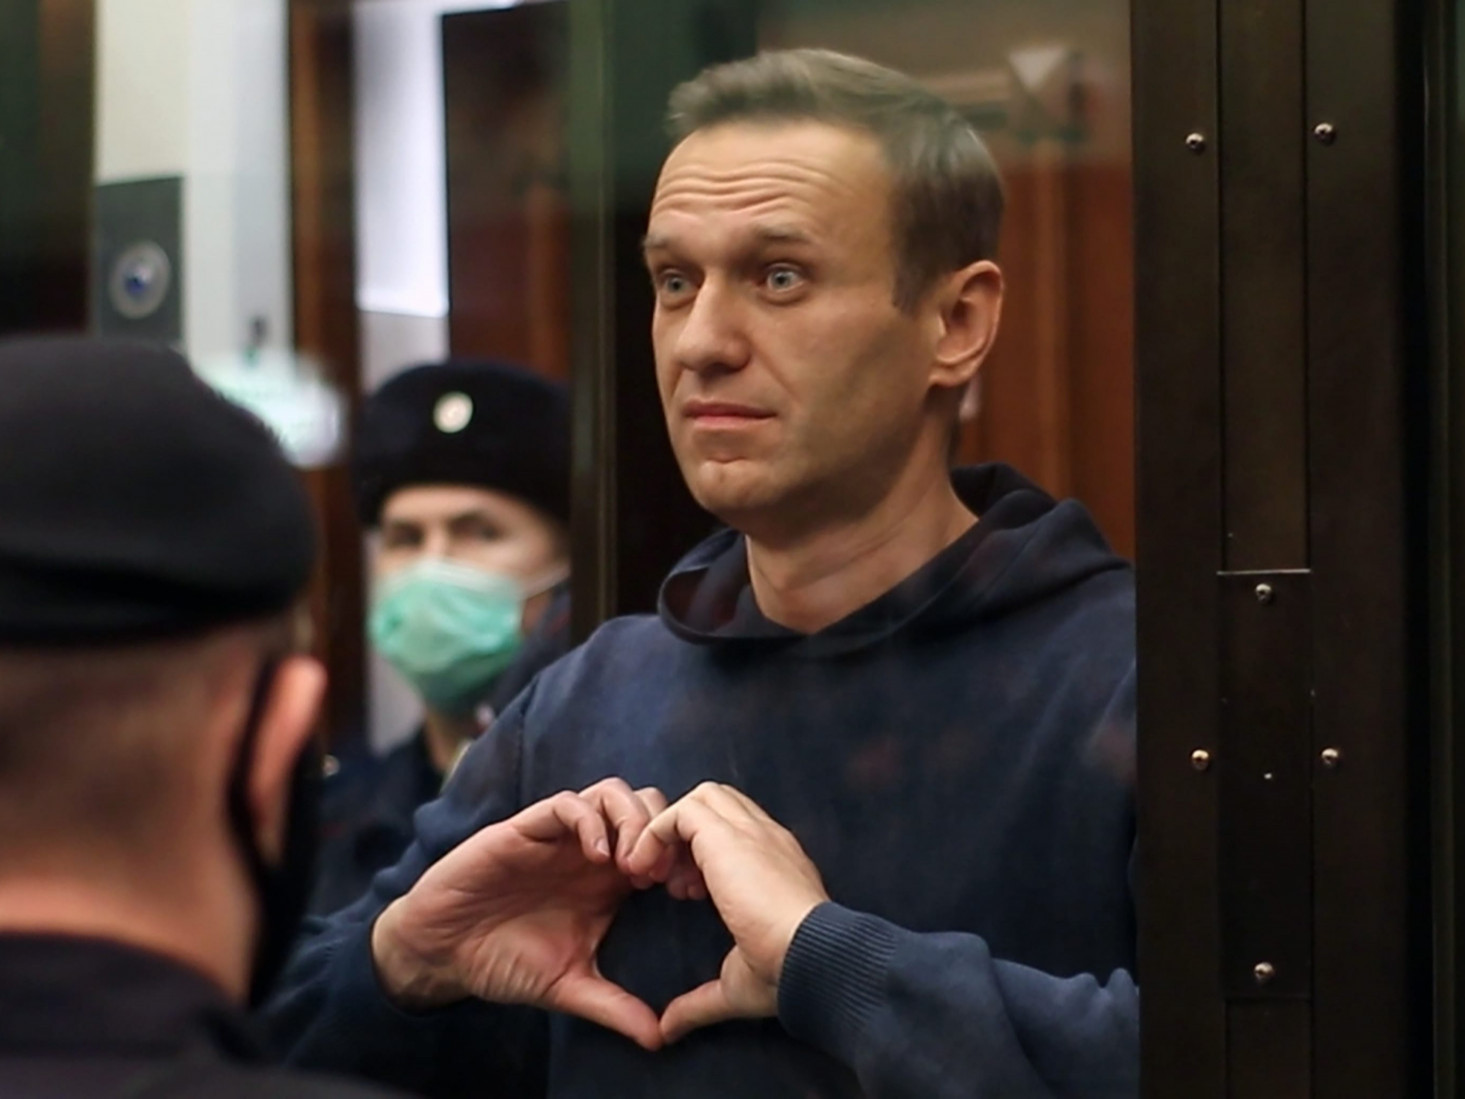 А.Навальныйд олон улсын хүний эрхийг хамгаалагчдын хүндэт шагнал олгохоор болжээ